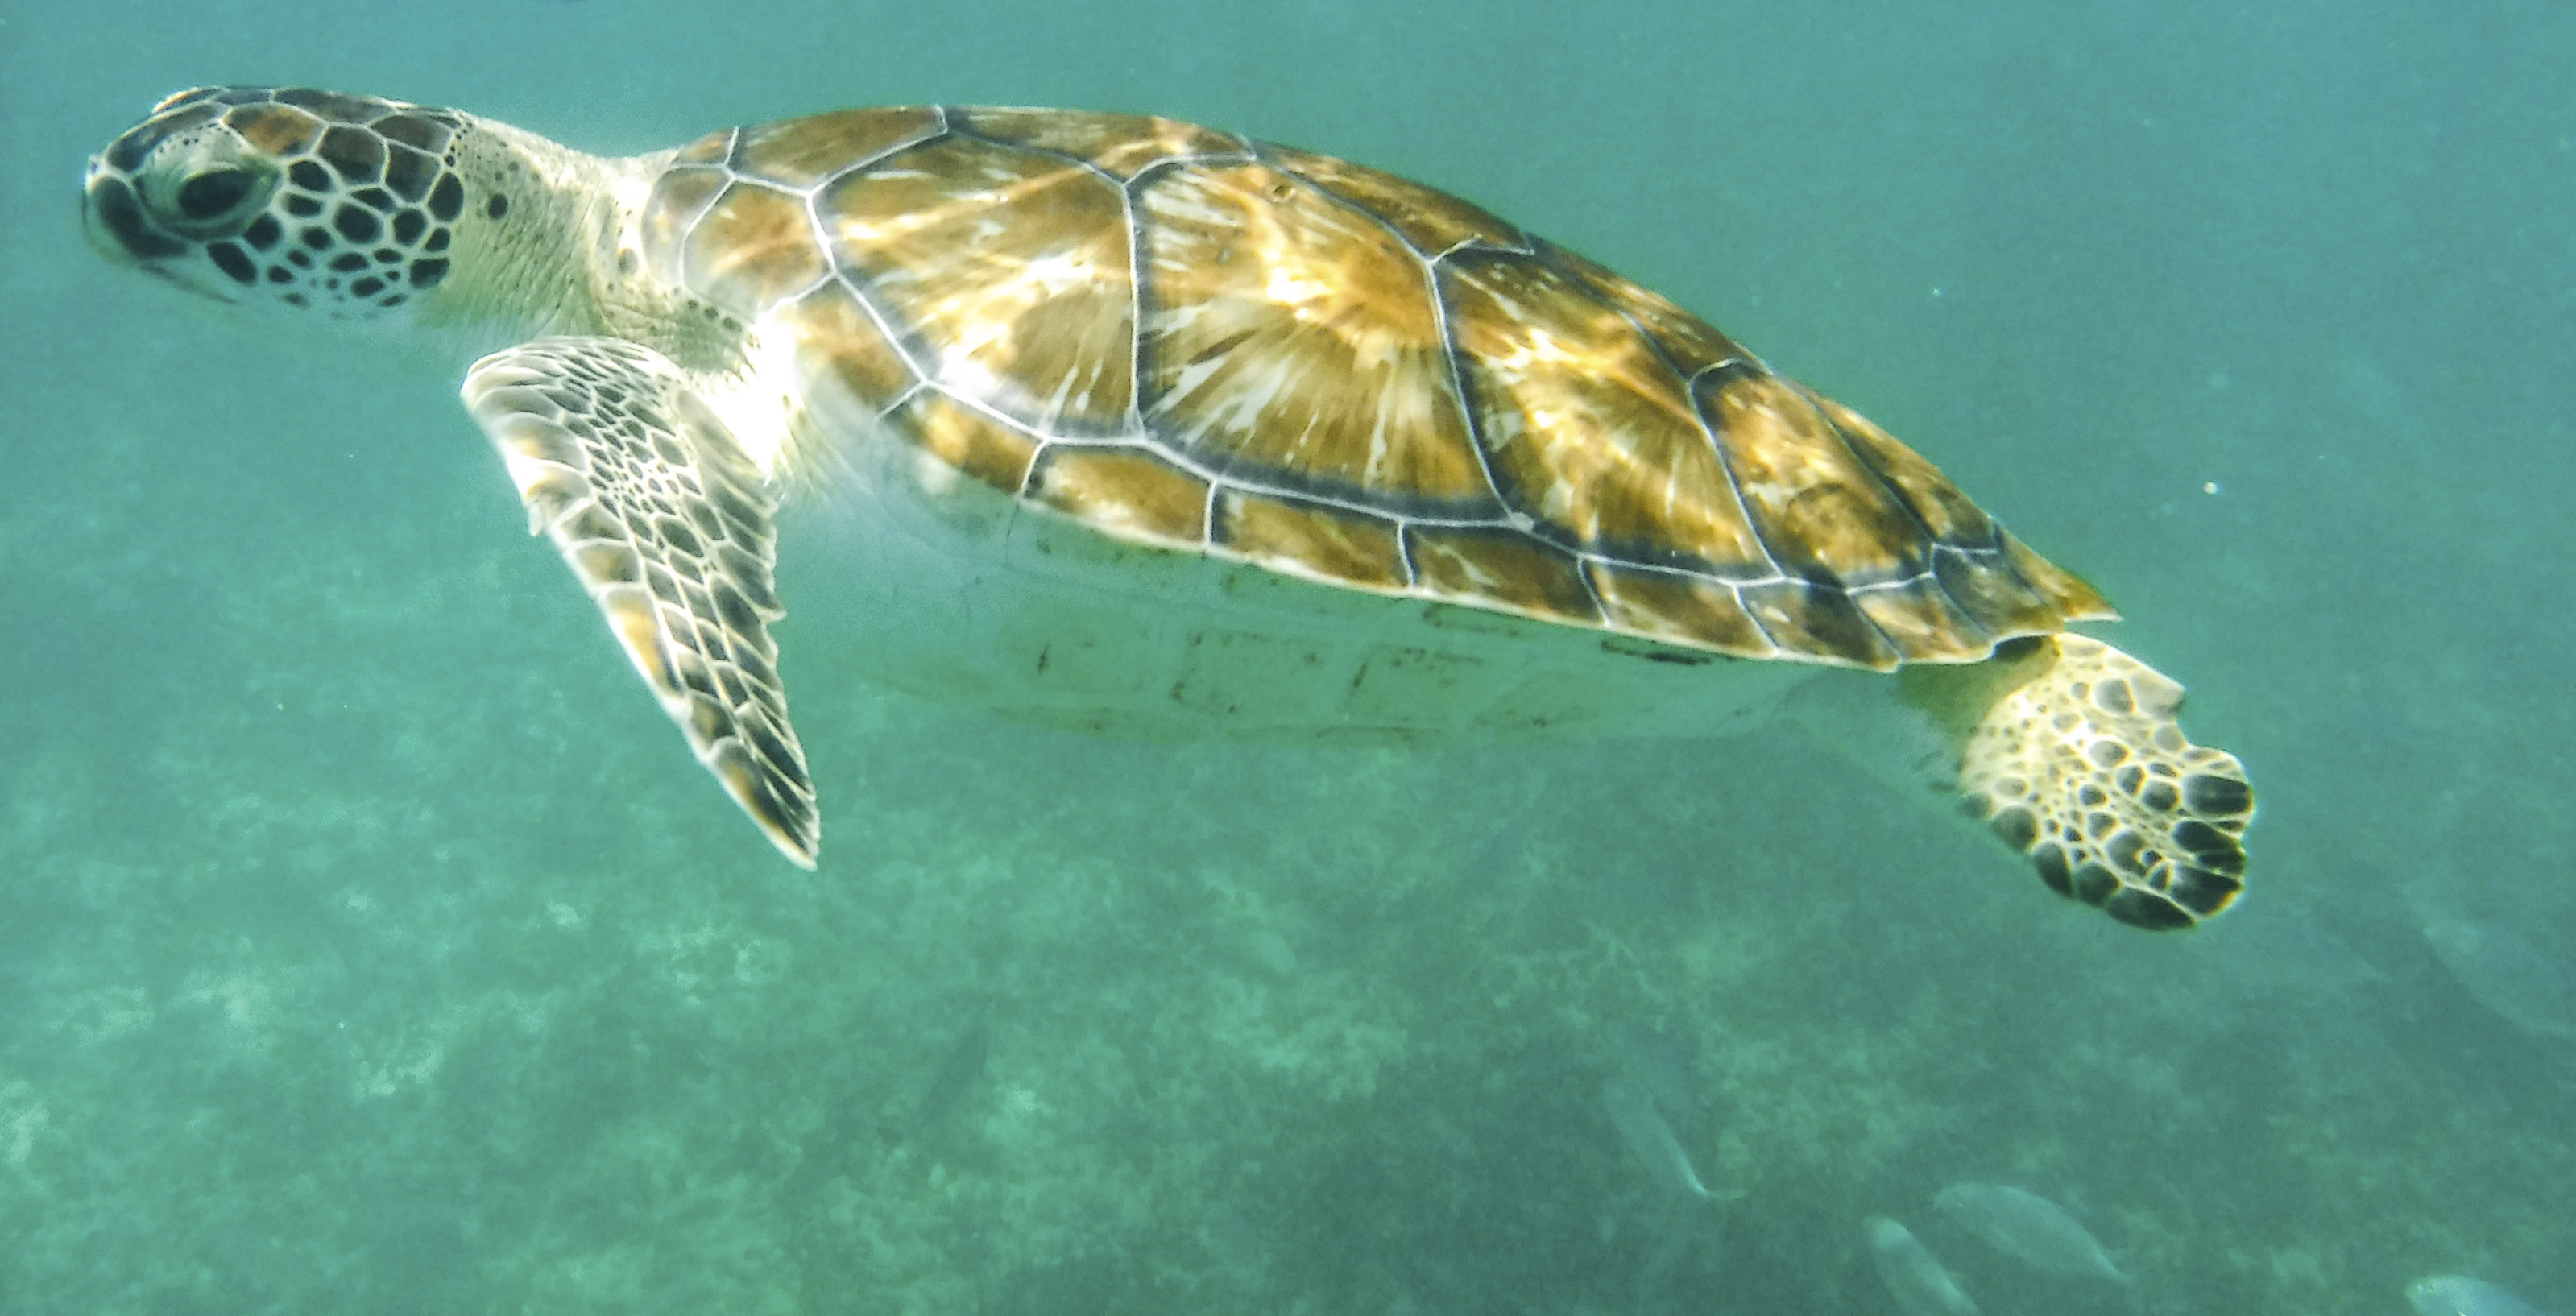 Los científicos colocaron rastreadores GPS a 22 tortugas carey para evaluar las rutas de regreso a sus zonas de alimentación originales después de la reproducción (FOTO: ELIZABETH RUIZ /CUARTOSCURO.COM)